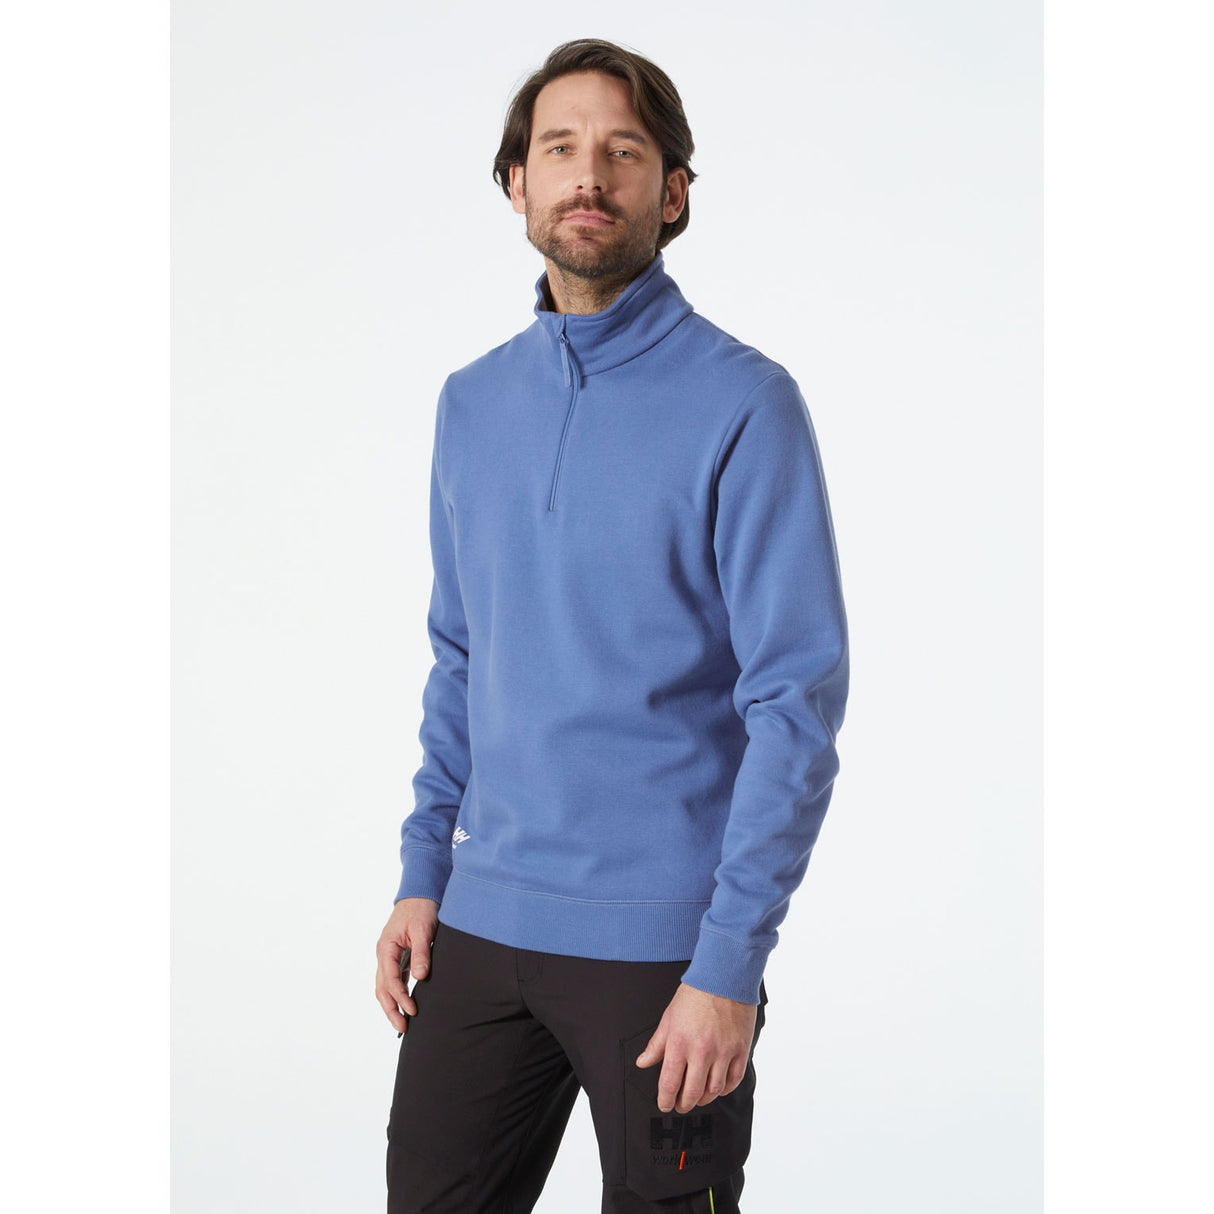 Helly Hansen Workwear Classic Half Zip Sweatshirt